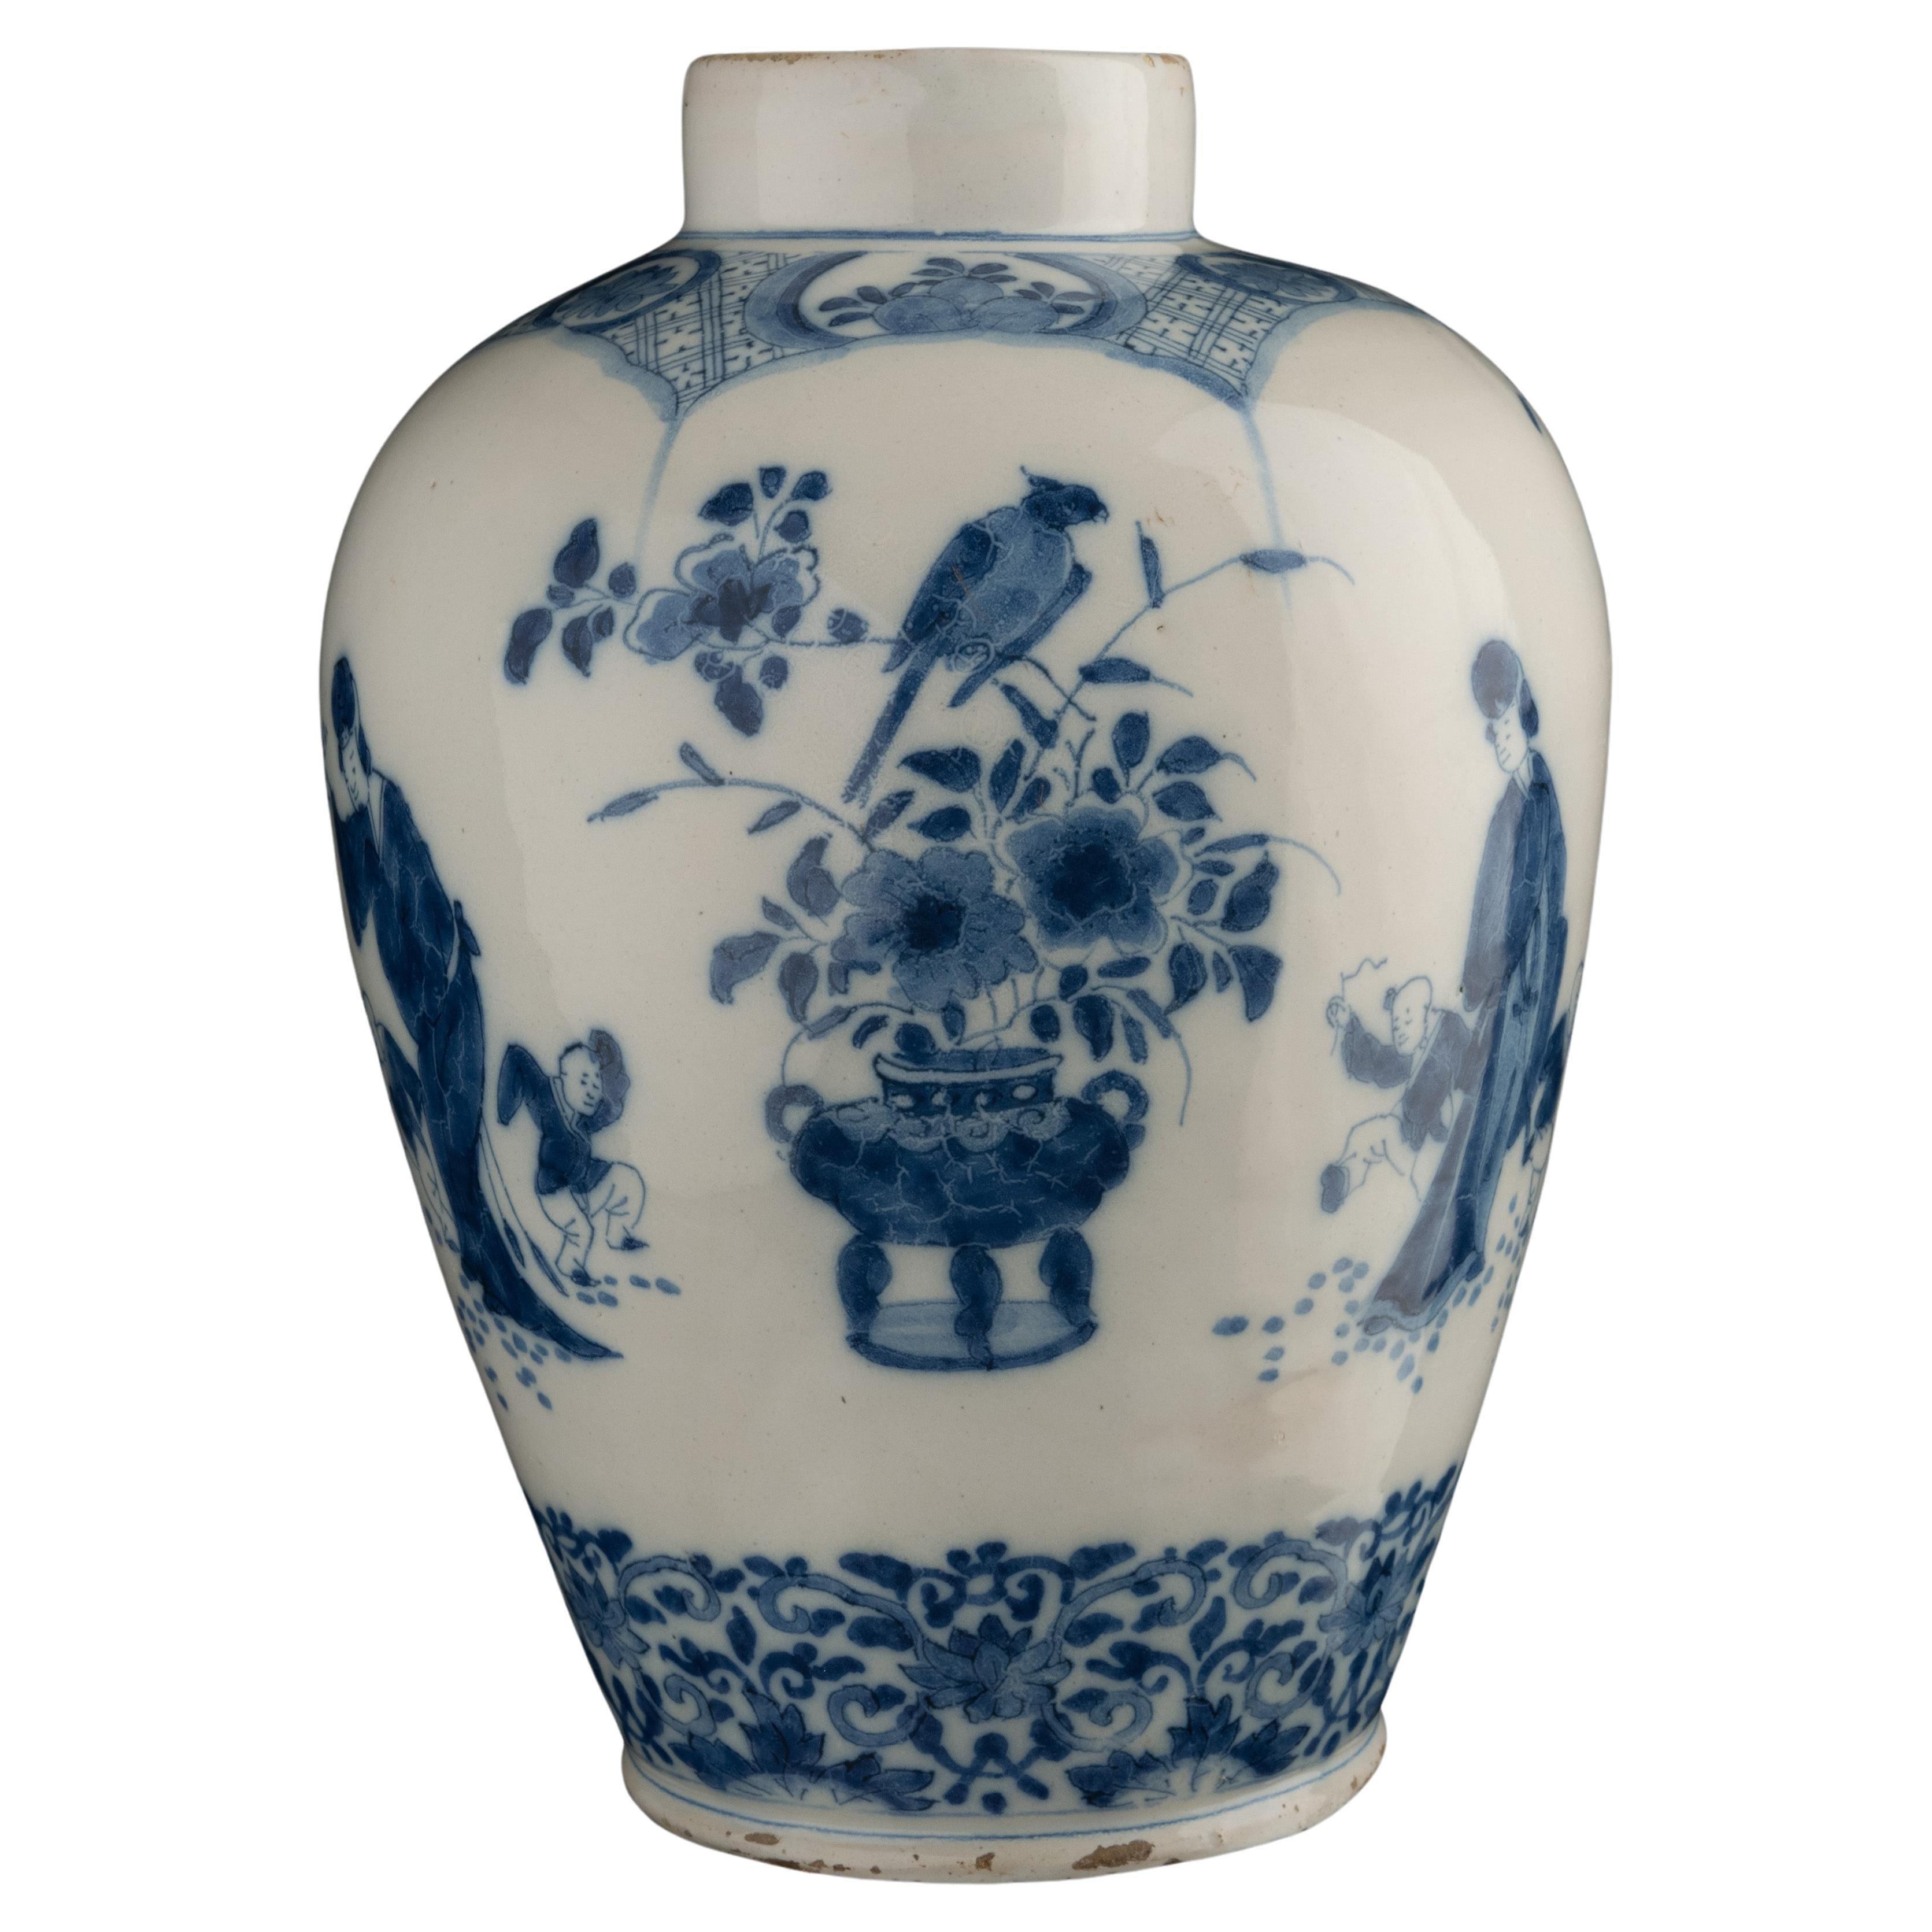 Jarre en chinoiserie bleue et blanche Delft, 1700-1720 hauteur 28 cm / 11.02 in